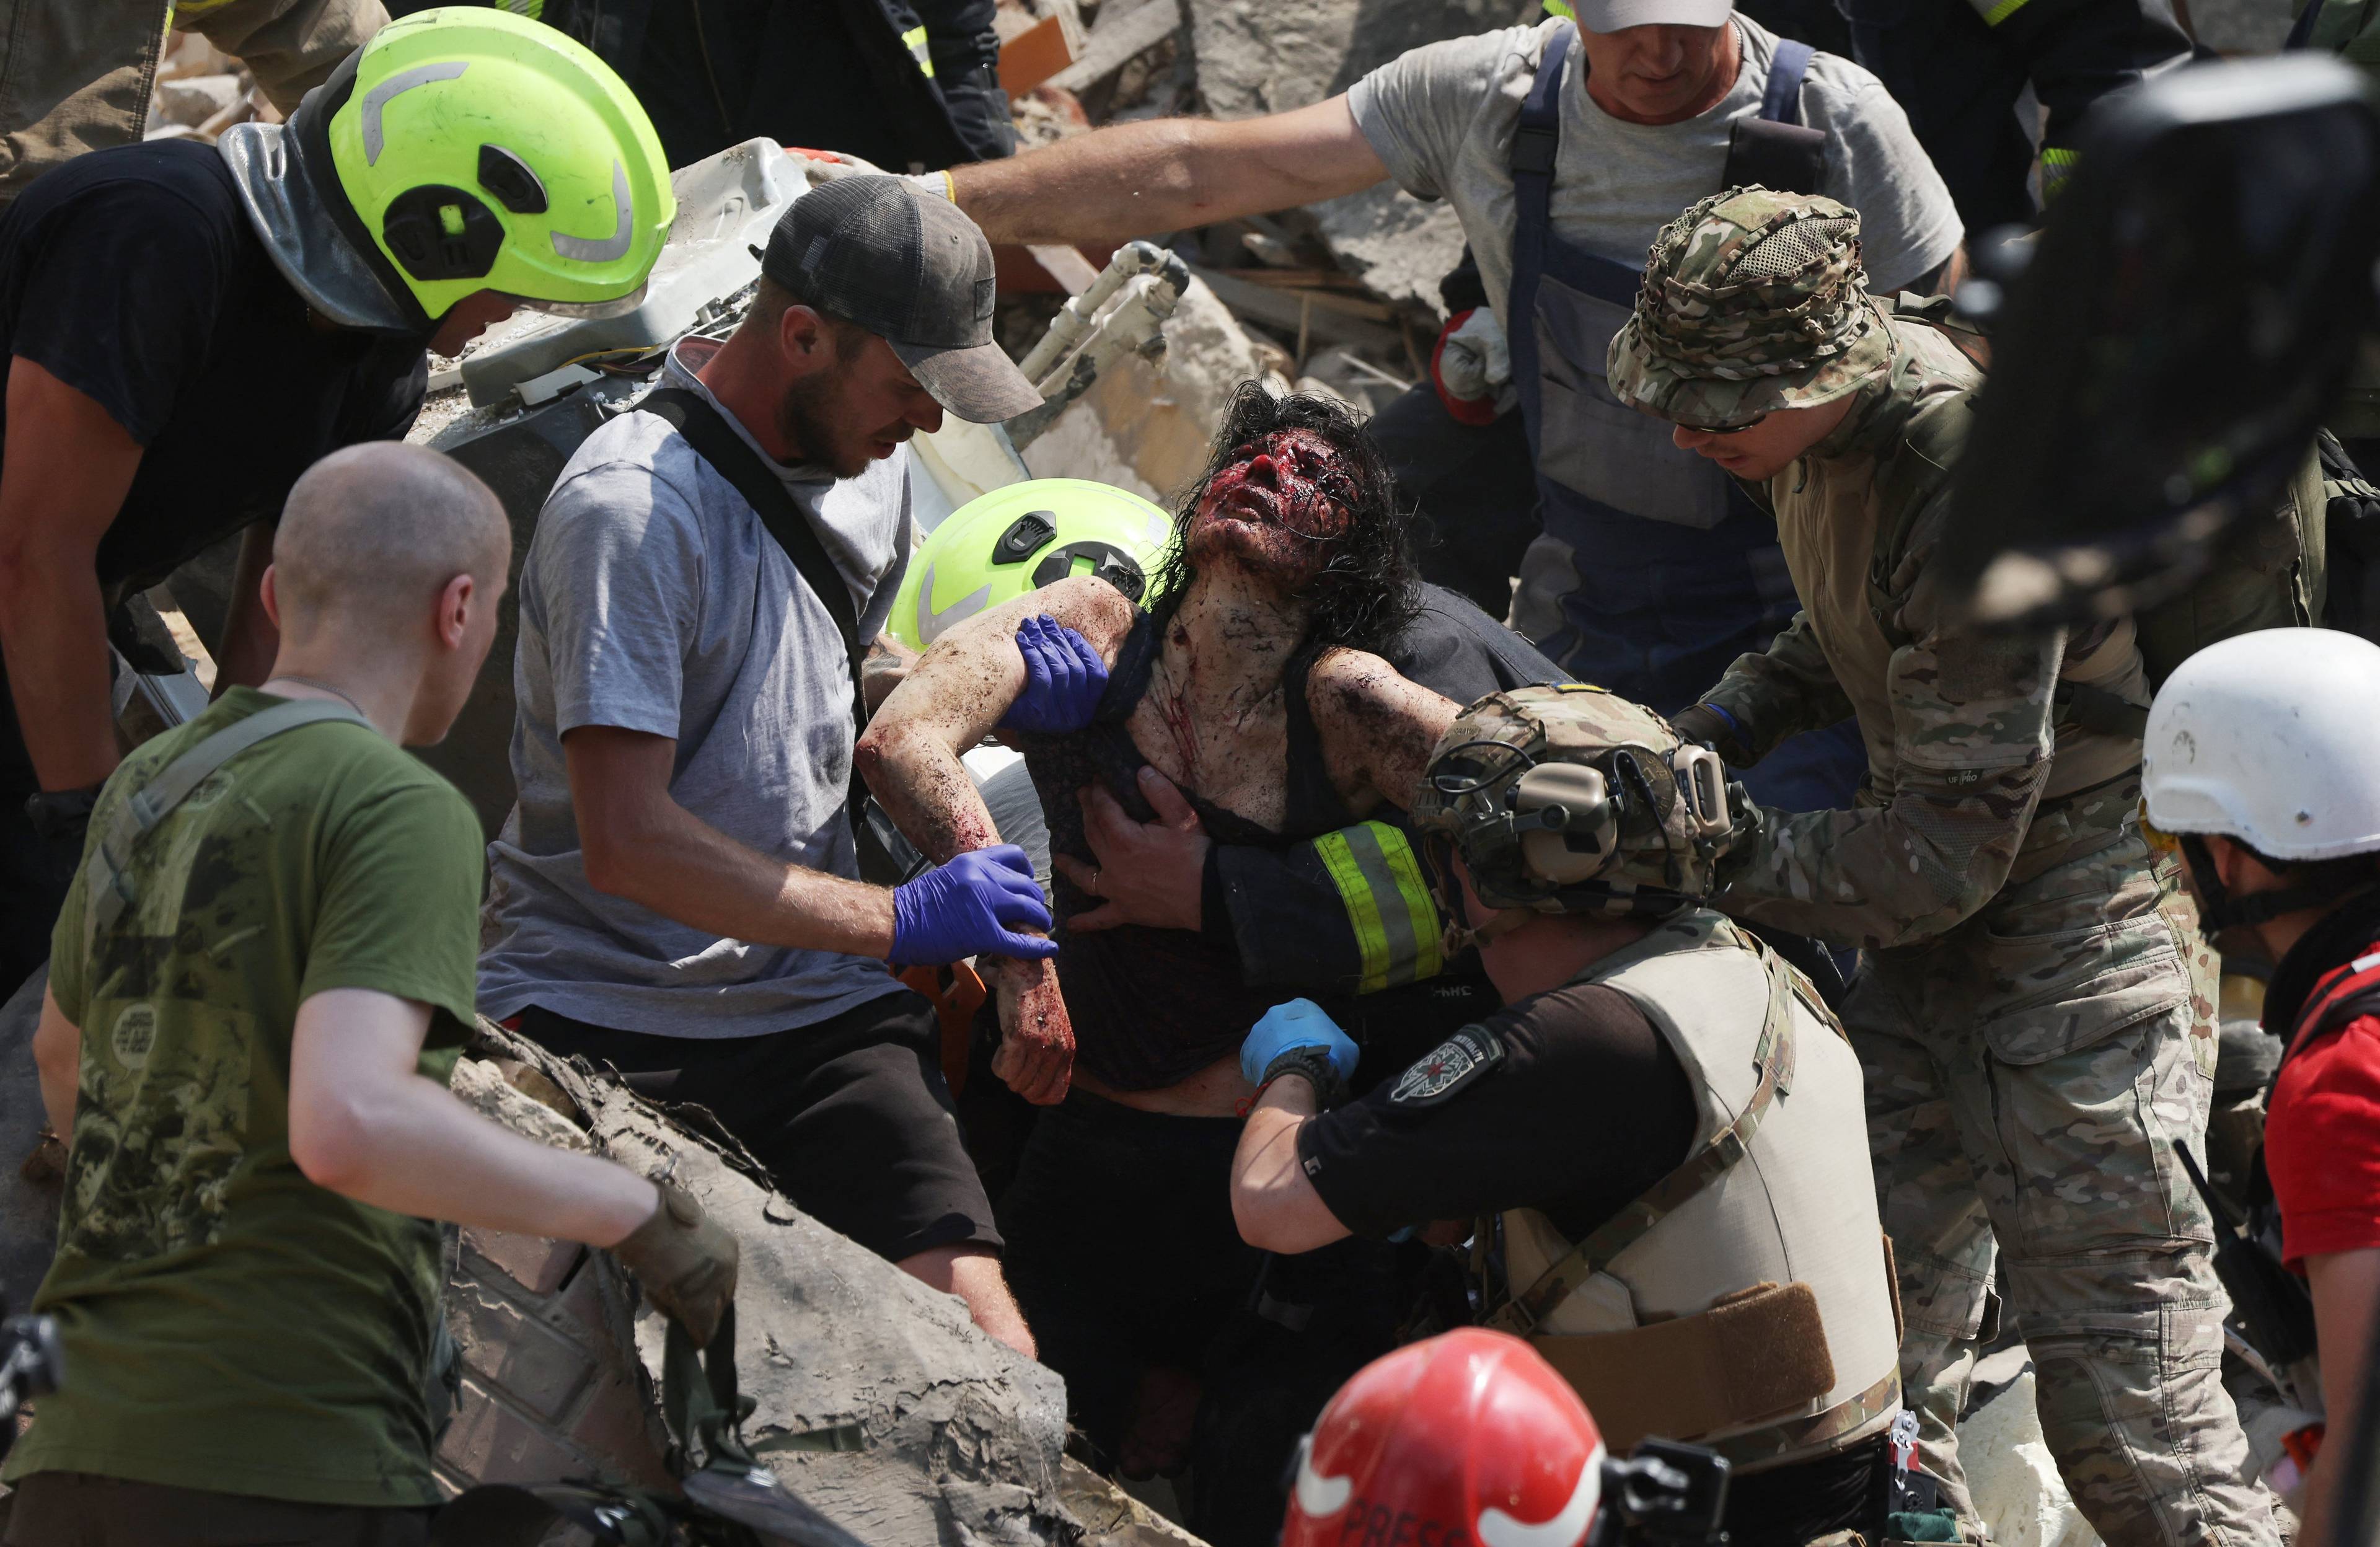 Na zdjęciu widać ratowników, którzy z gruzów wyciągają ranną kobietę